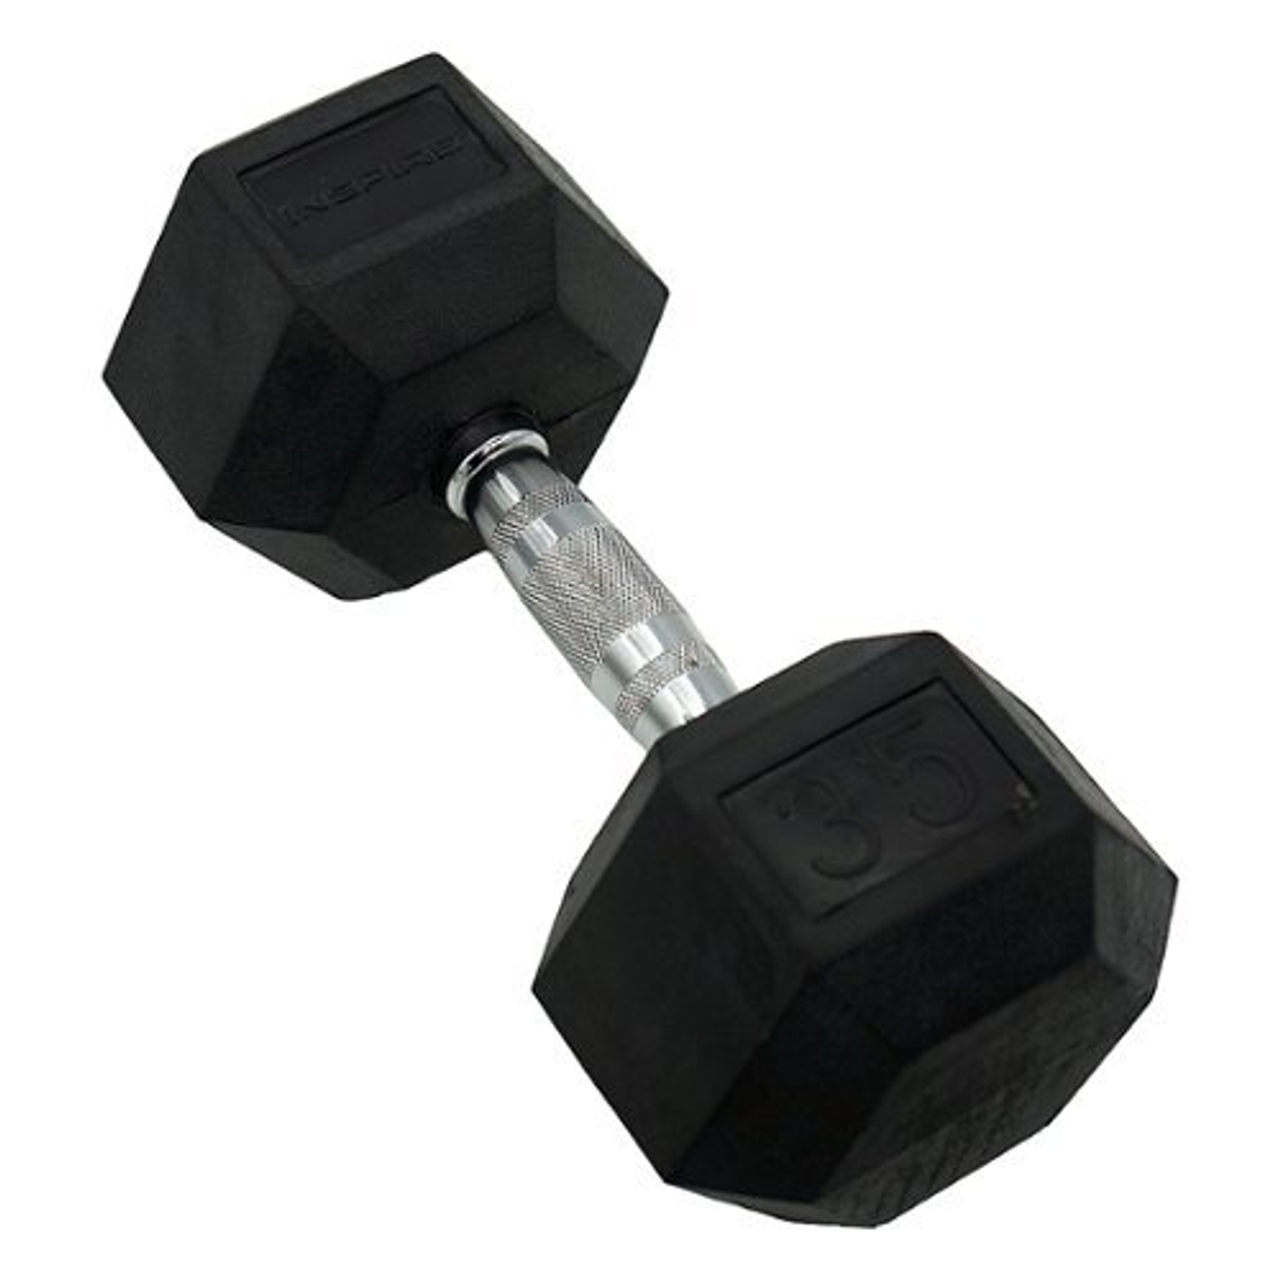 Inspire Fitness 35LB Rubber Dumbbell - Black